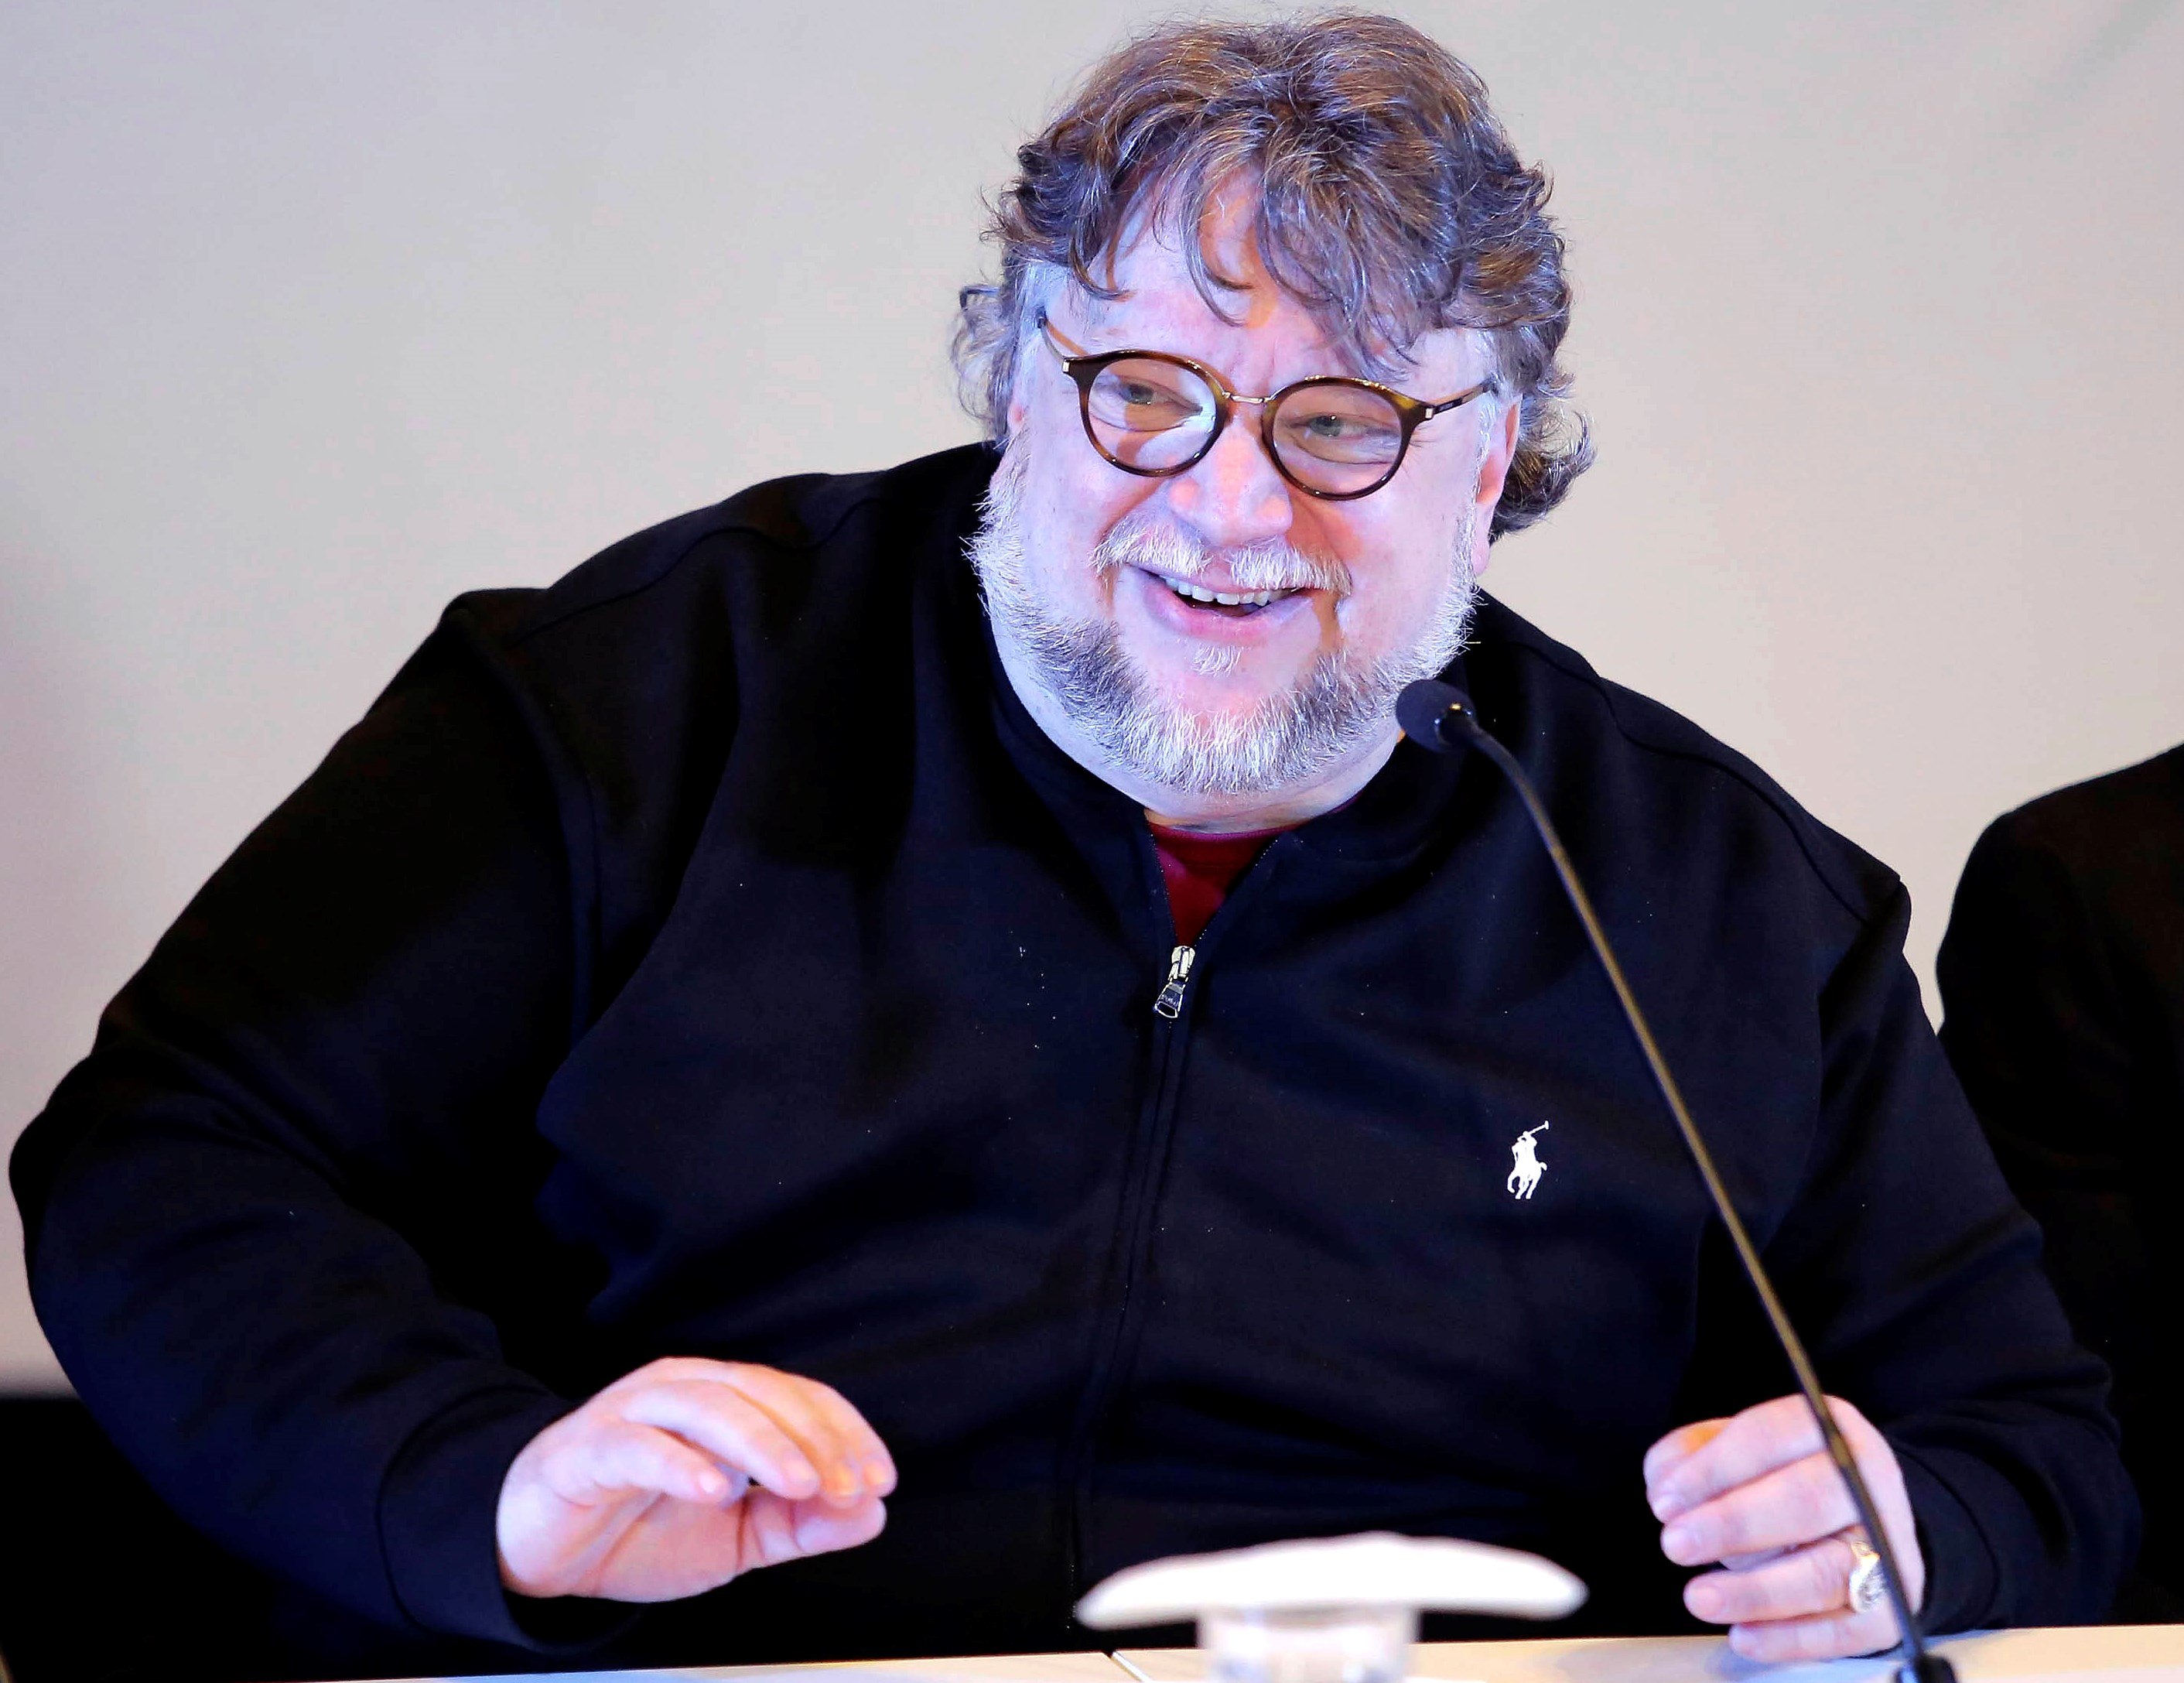  Del Toro entrega becas para impulsar a jóvenes cineastas en México